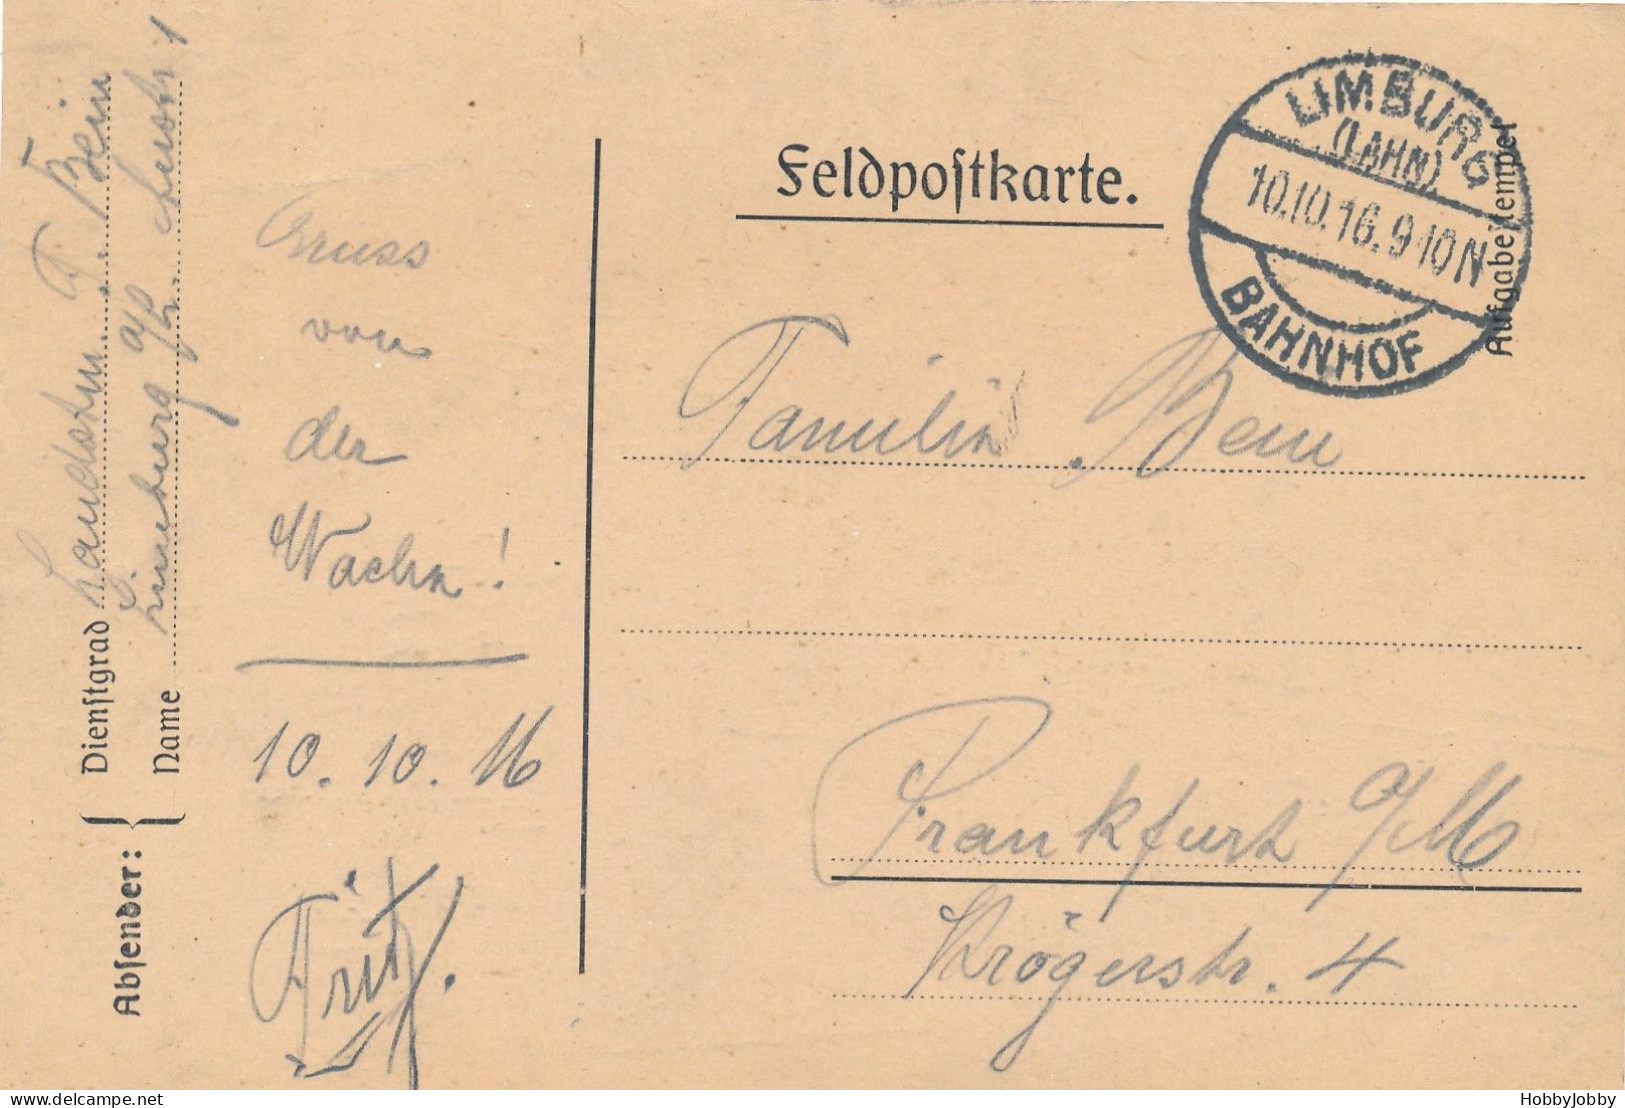 3 stück I WK Handgezeichnet-Bleistift: Nachtwächter-Nassau 1917/PFEIFERAUCHER & Innerer Haupteingang Zentral Gefägnis-Fr